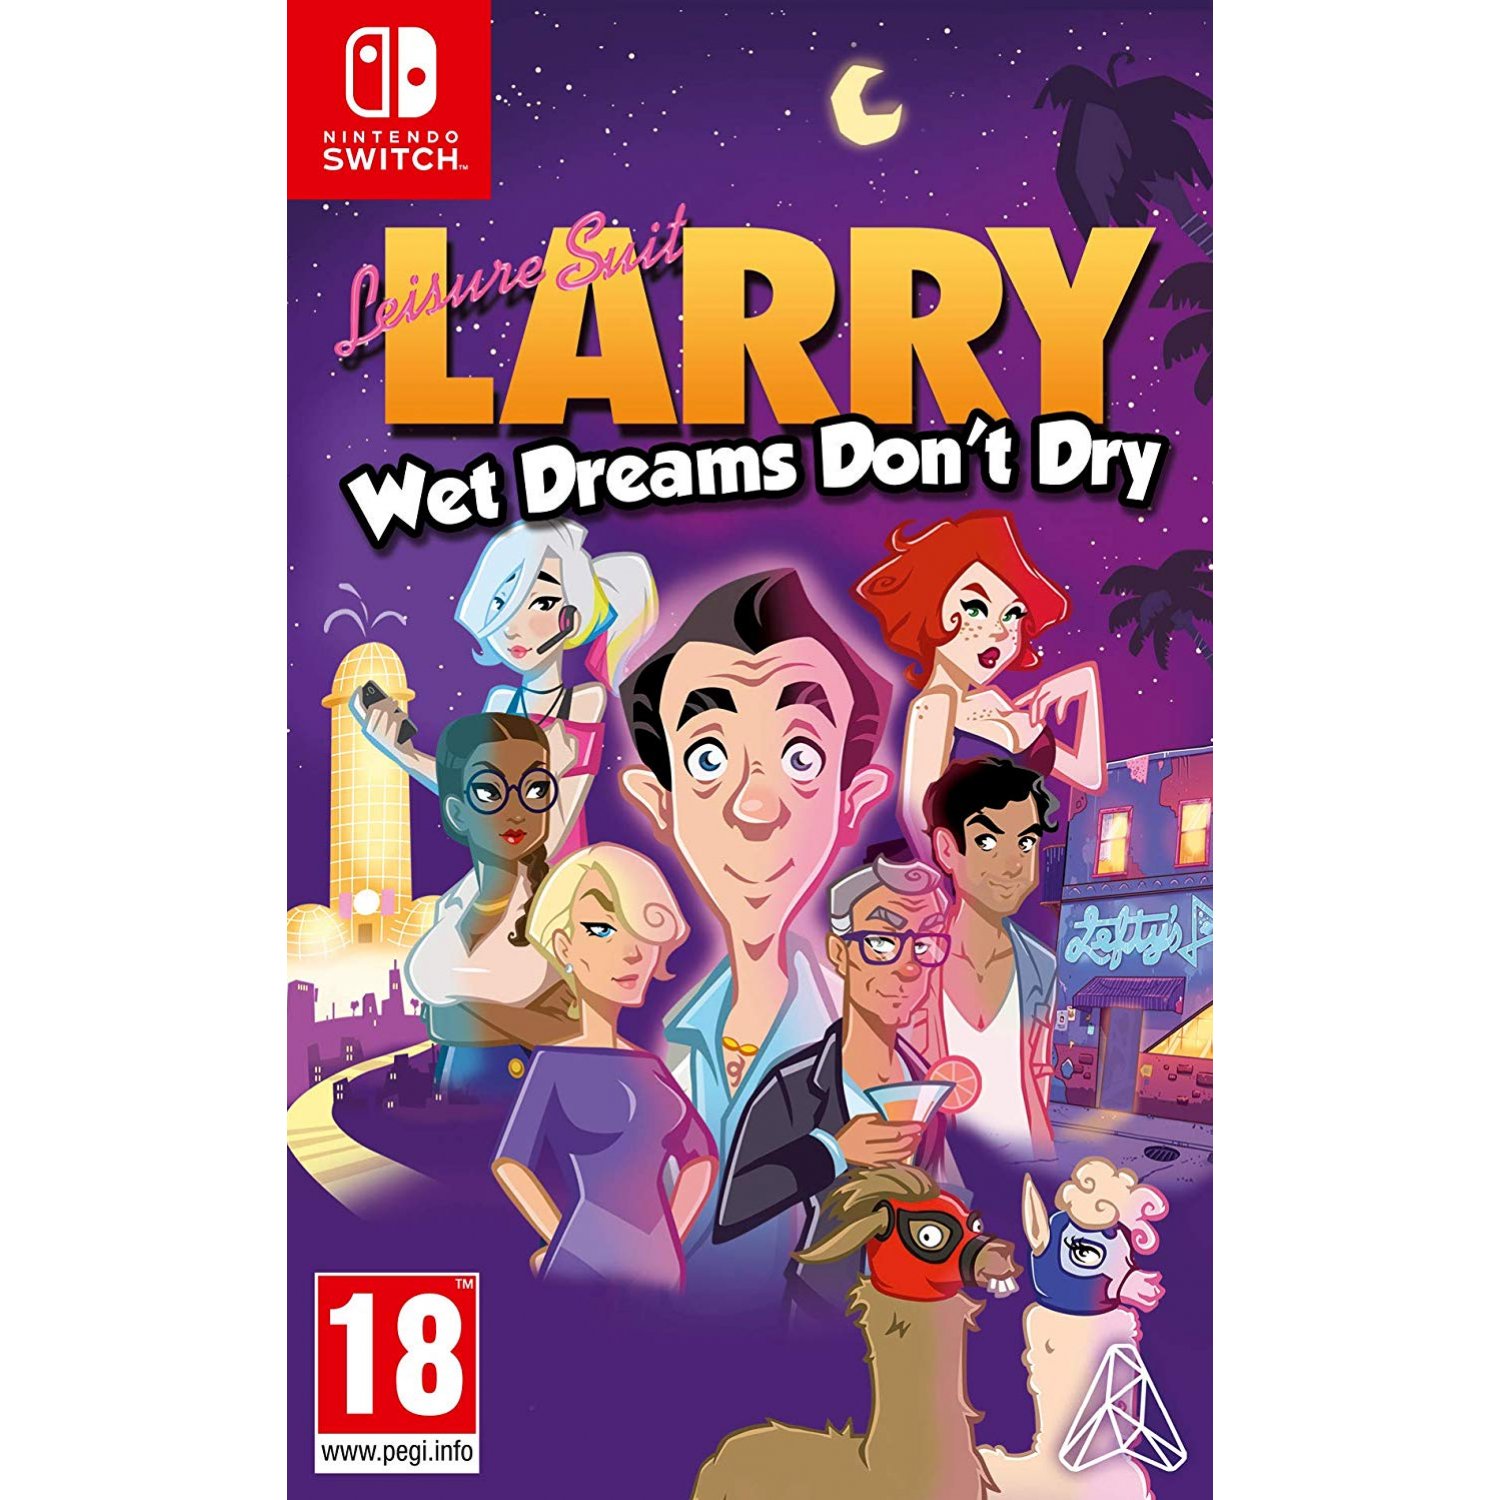 Köp Leisure Suit Larry - Wet Dreams Don't Dry